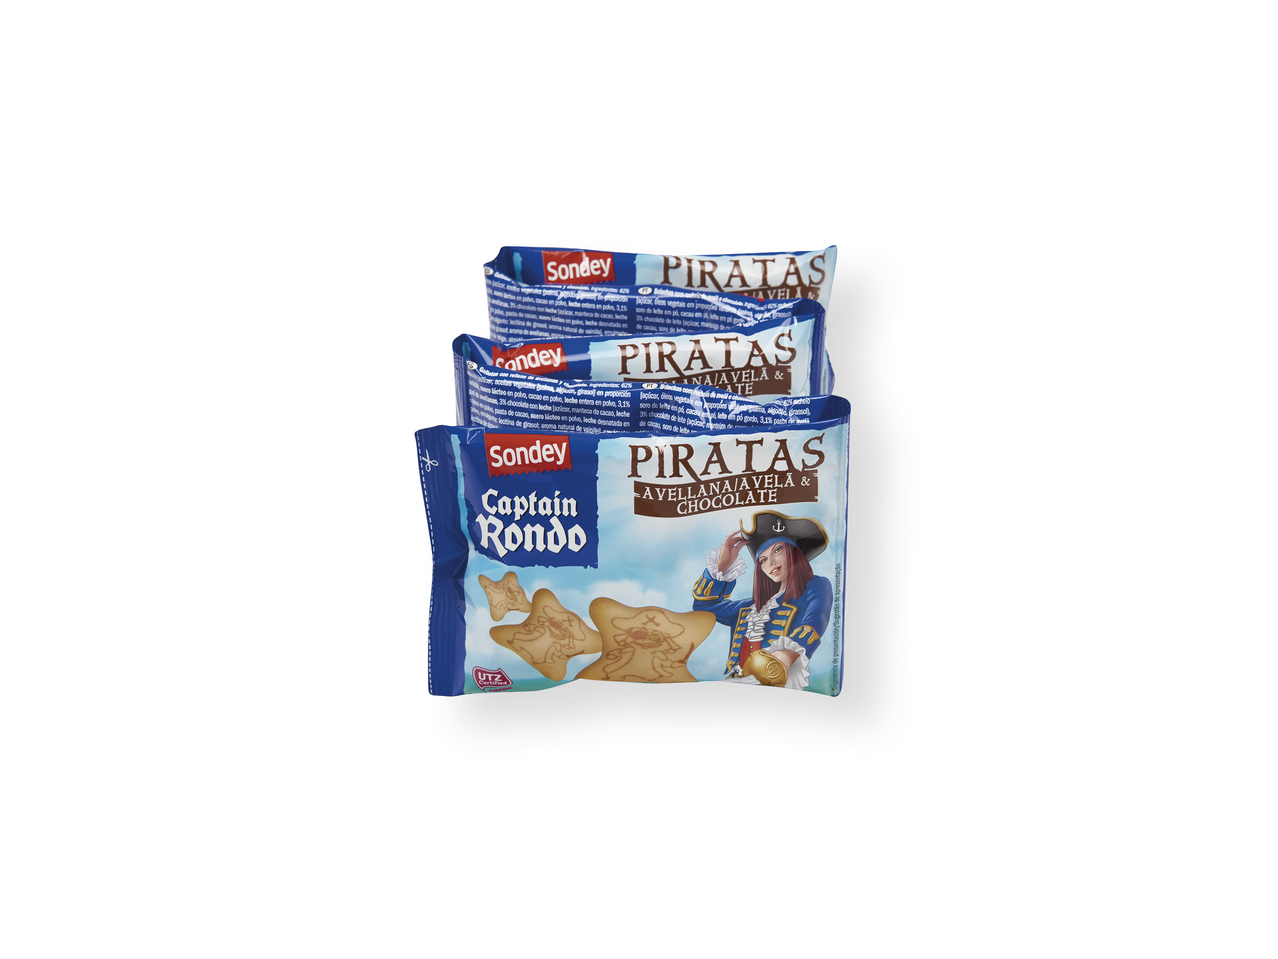 'Sondey(R)' Galletas piratas de avellana y chocolate